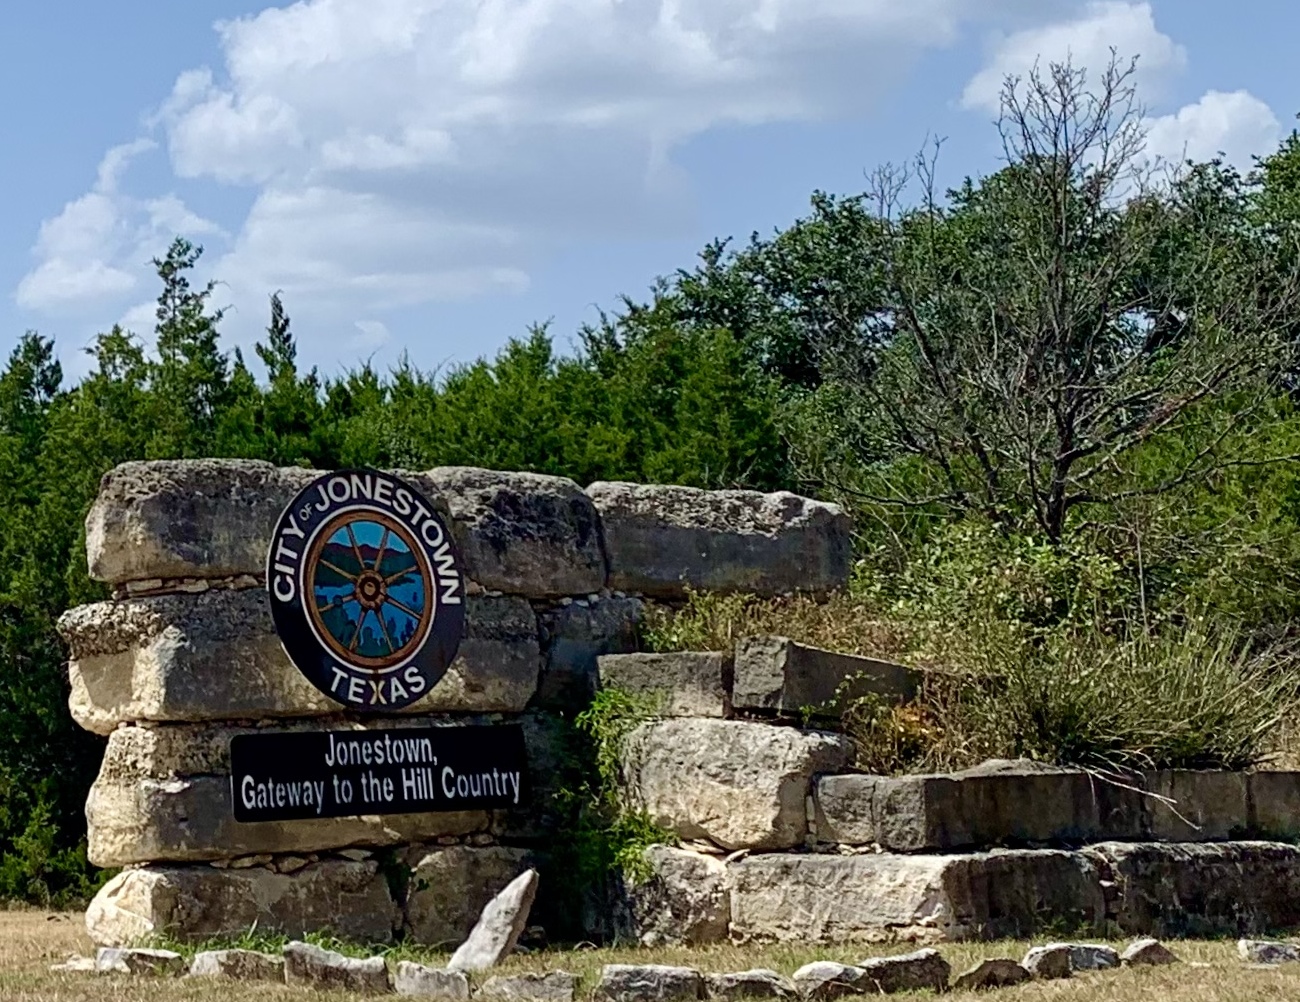 Welcome sign, Jonestown, Texas